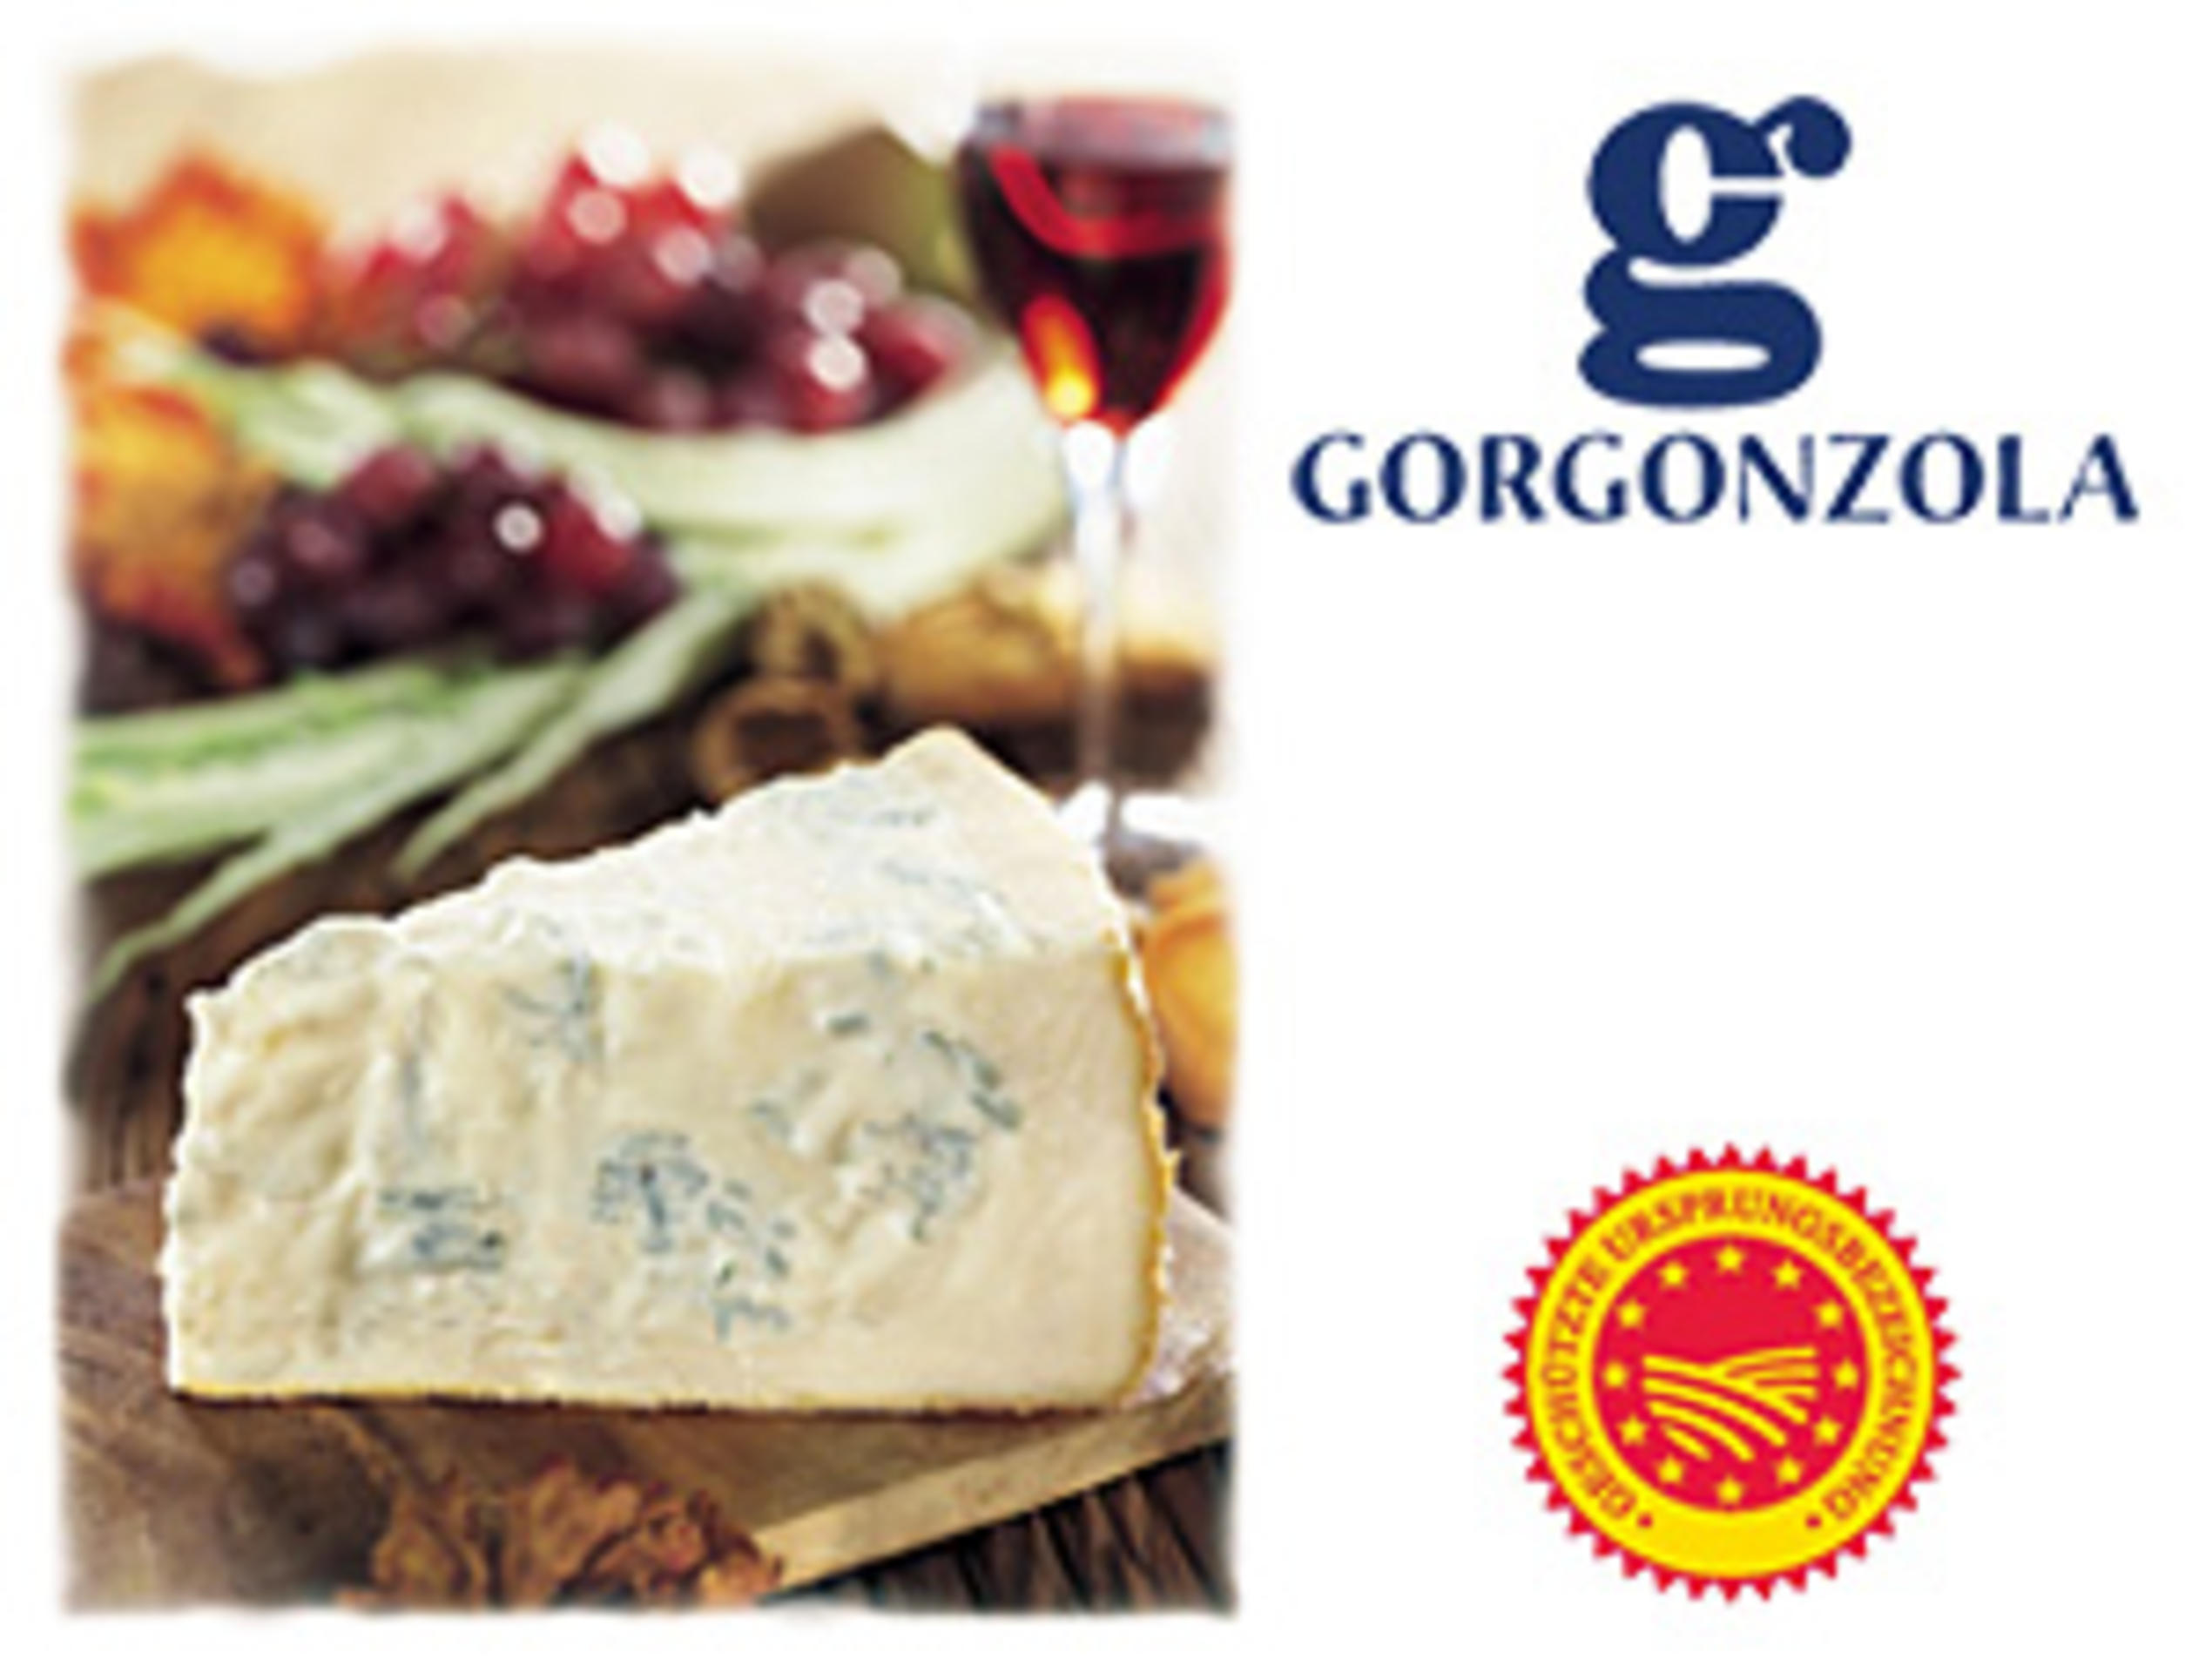 Gorgonzola - dolce und piccante